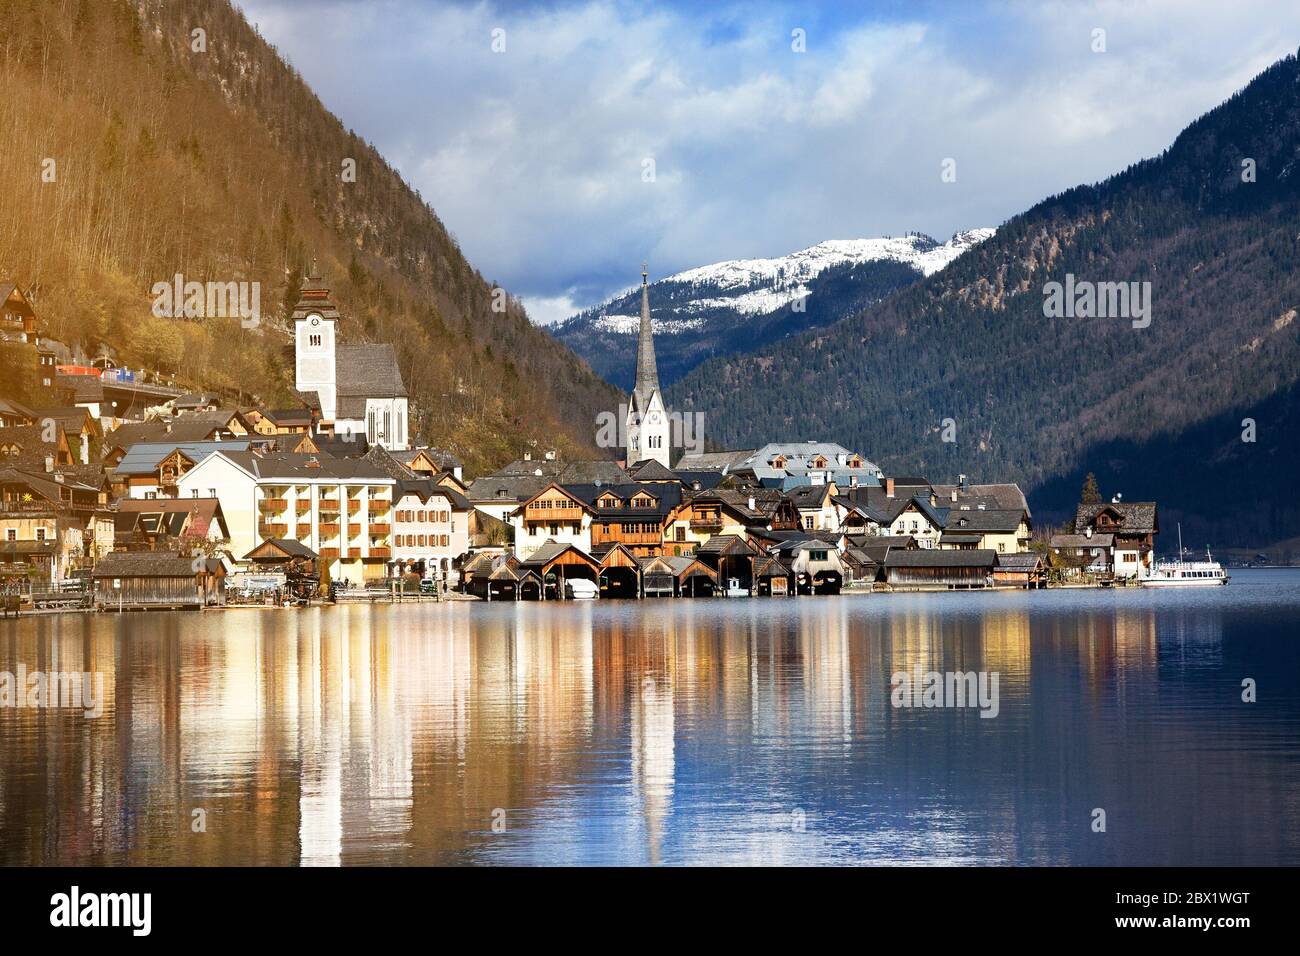 Hallstatt - UNESCO-Weltkulturerbe Dorf gegen Berg und See im Winter. Es ist für viele Touristen am beliebtesten, Romantik und Traum vom Reiseziel. Austris Stockfoto